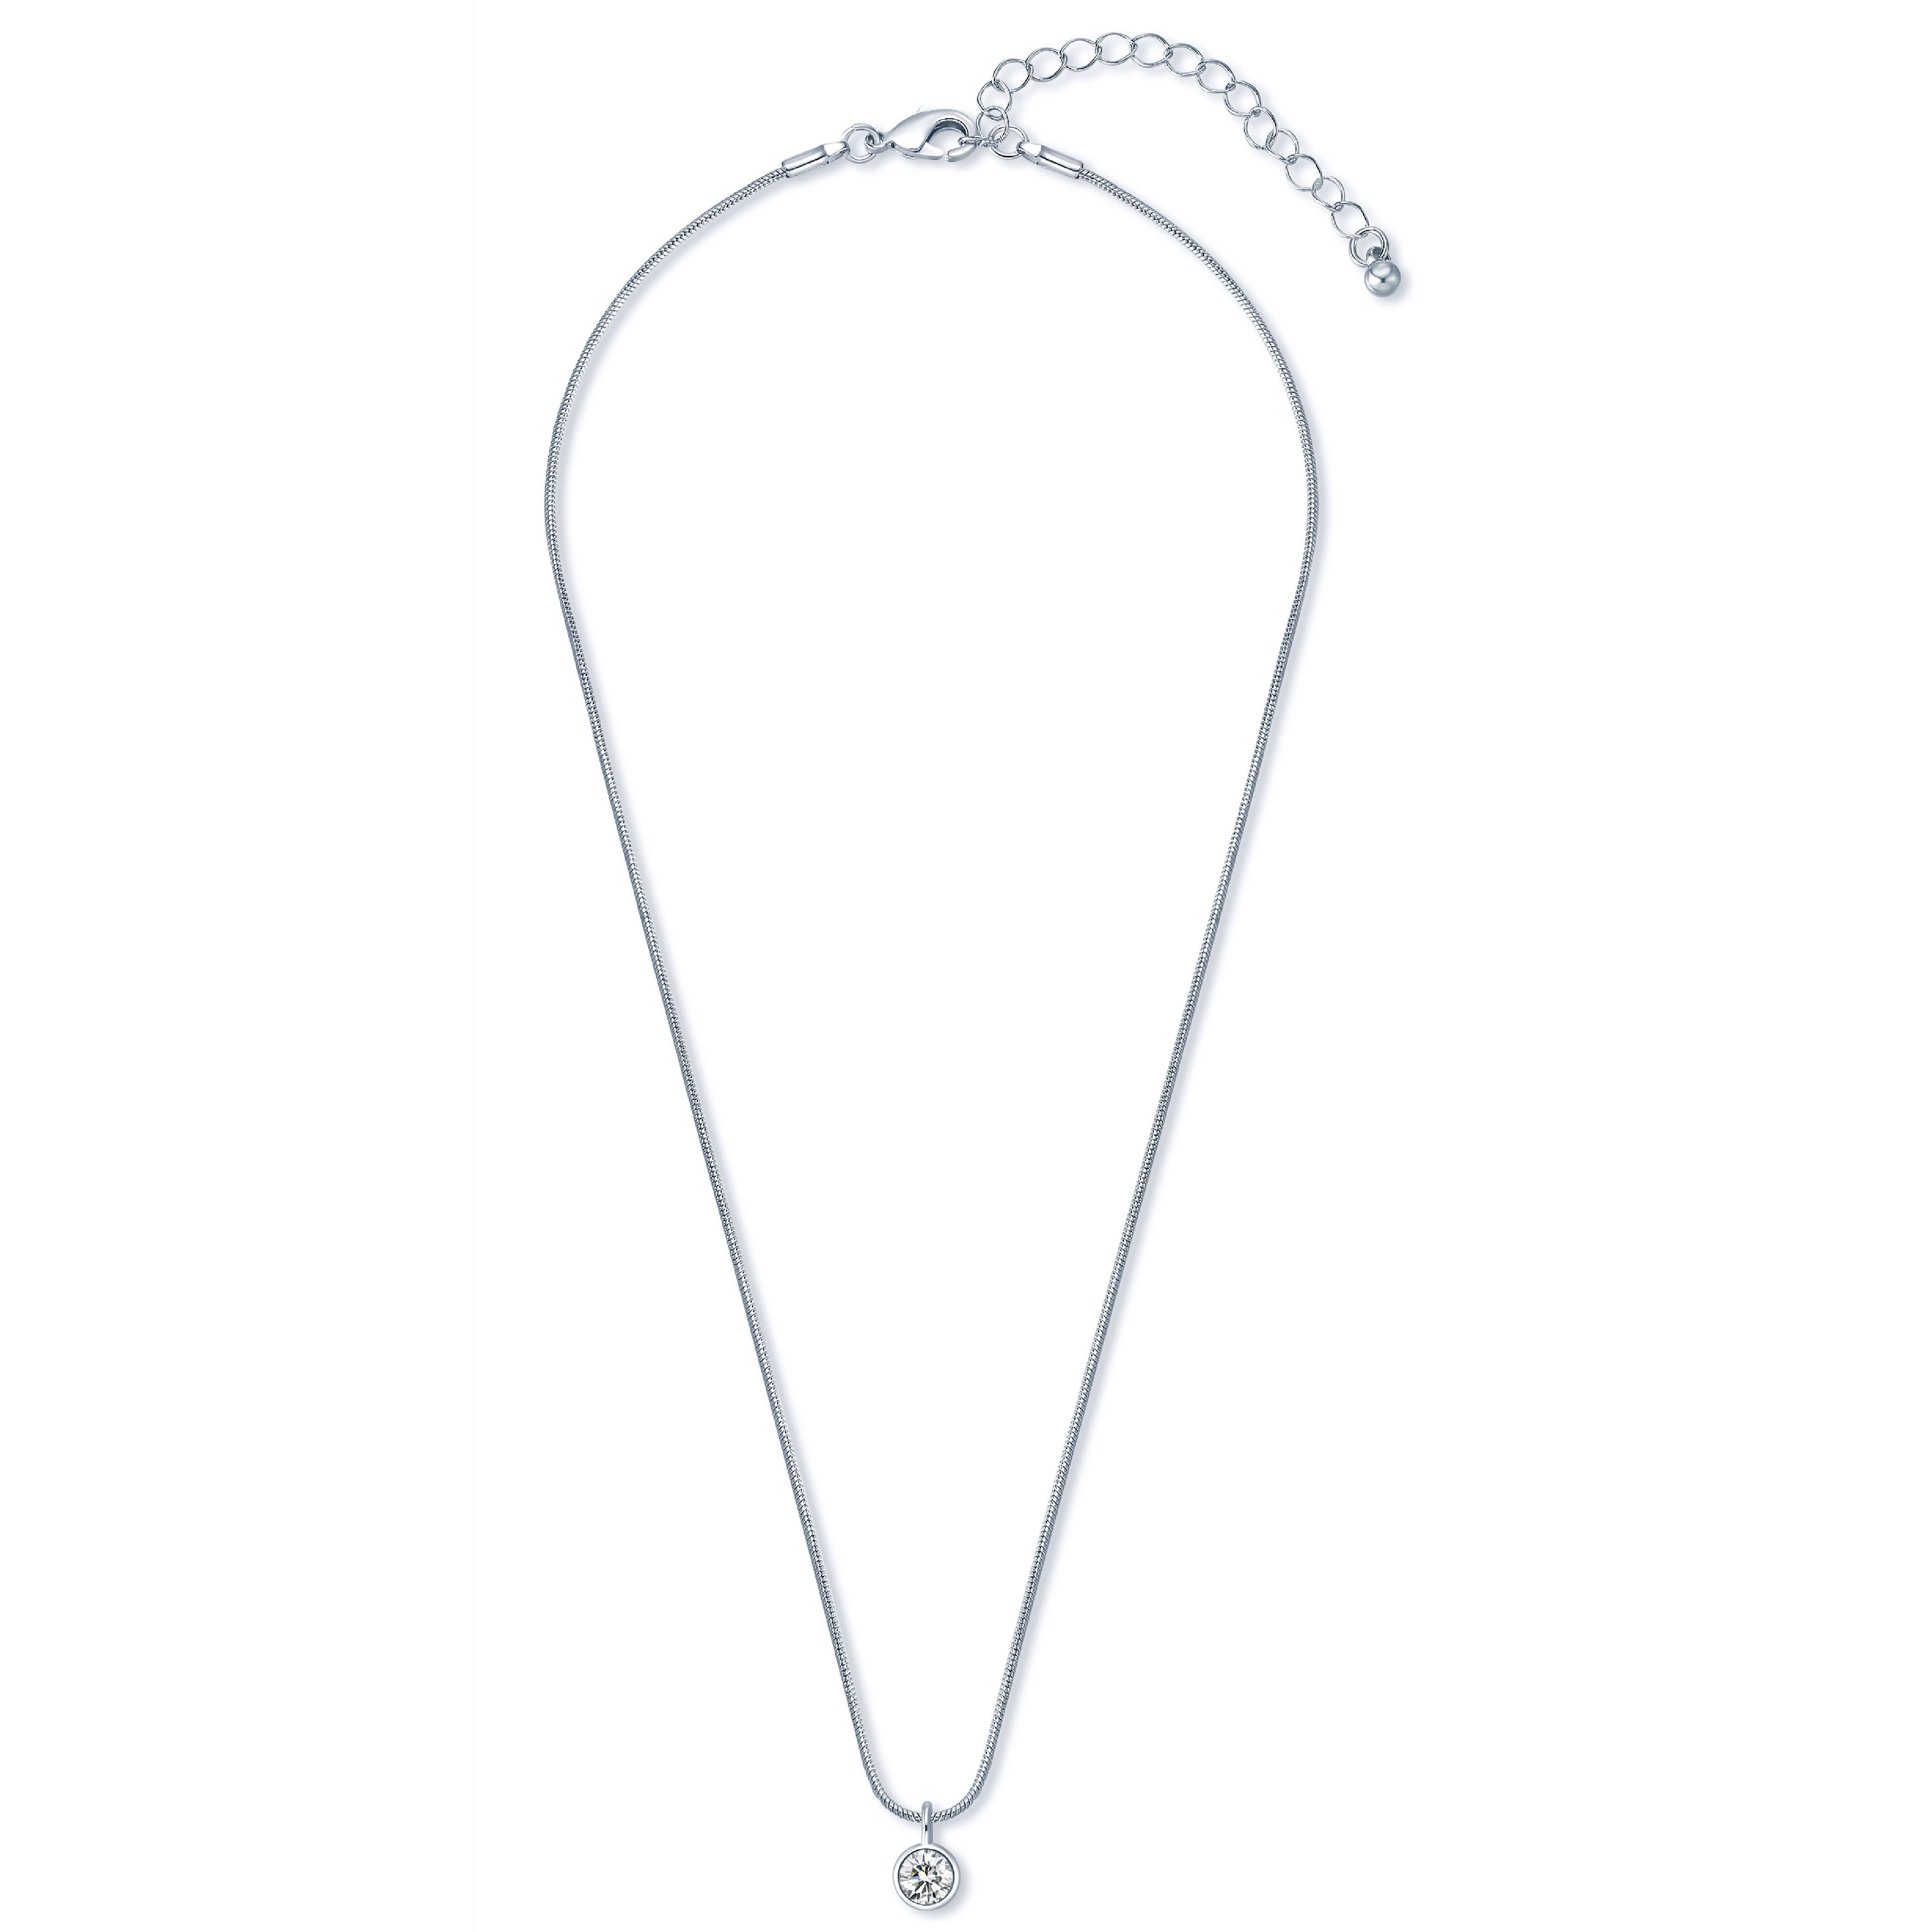 Besito Diamond necklace